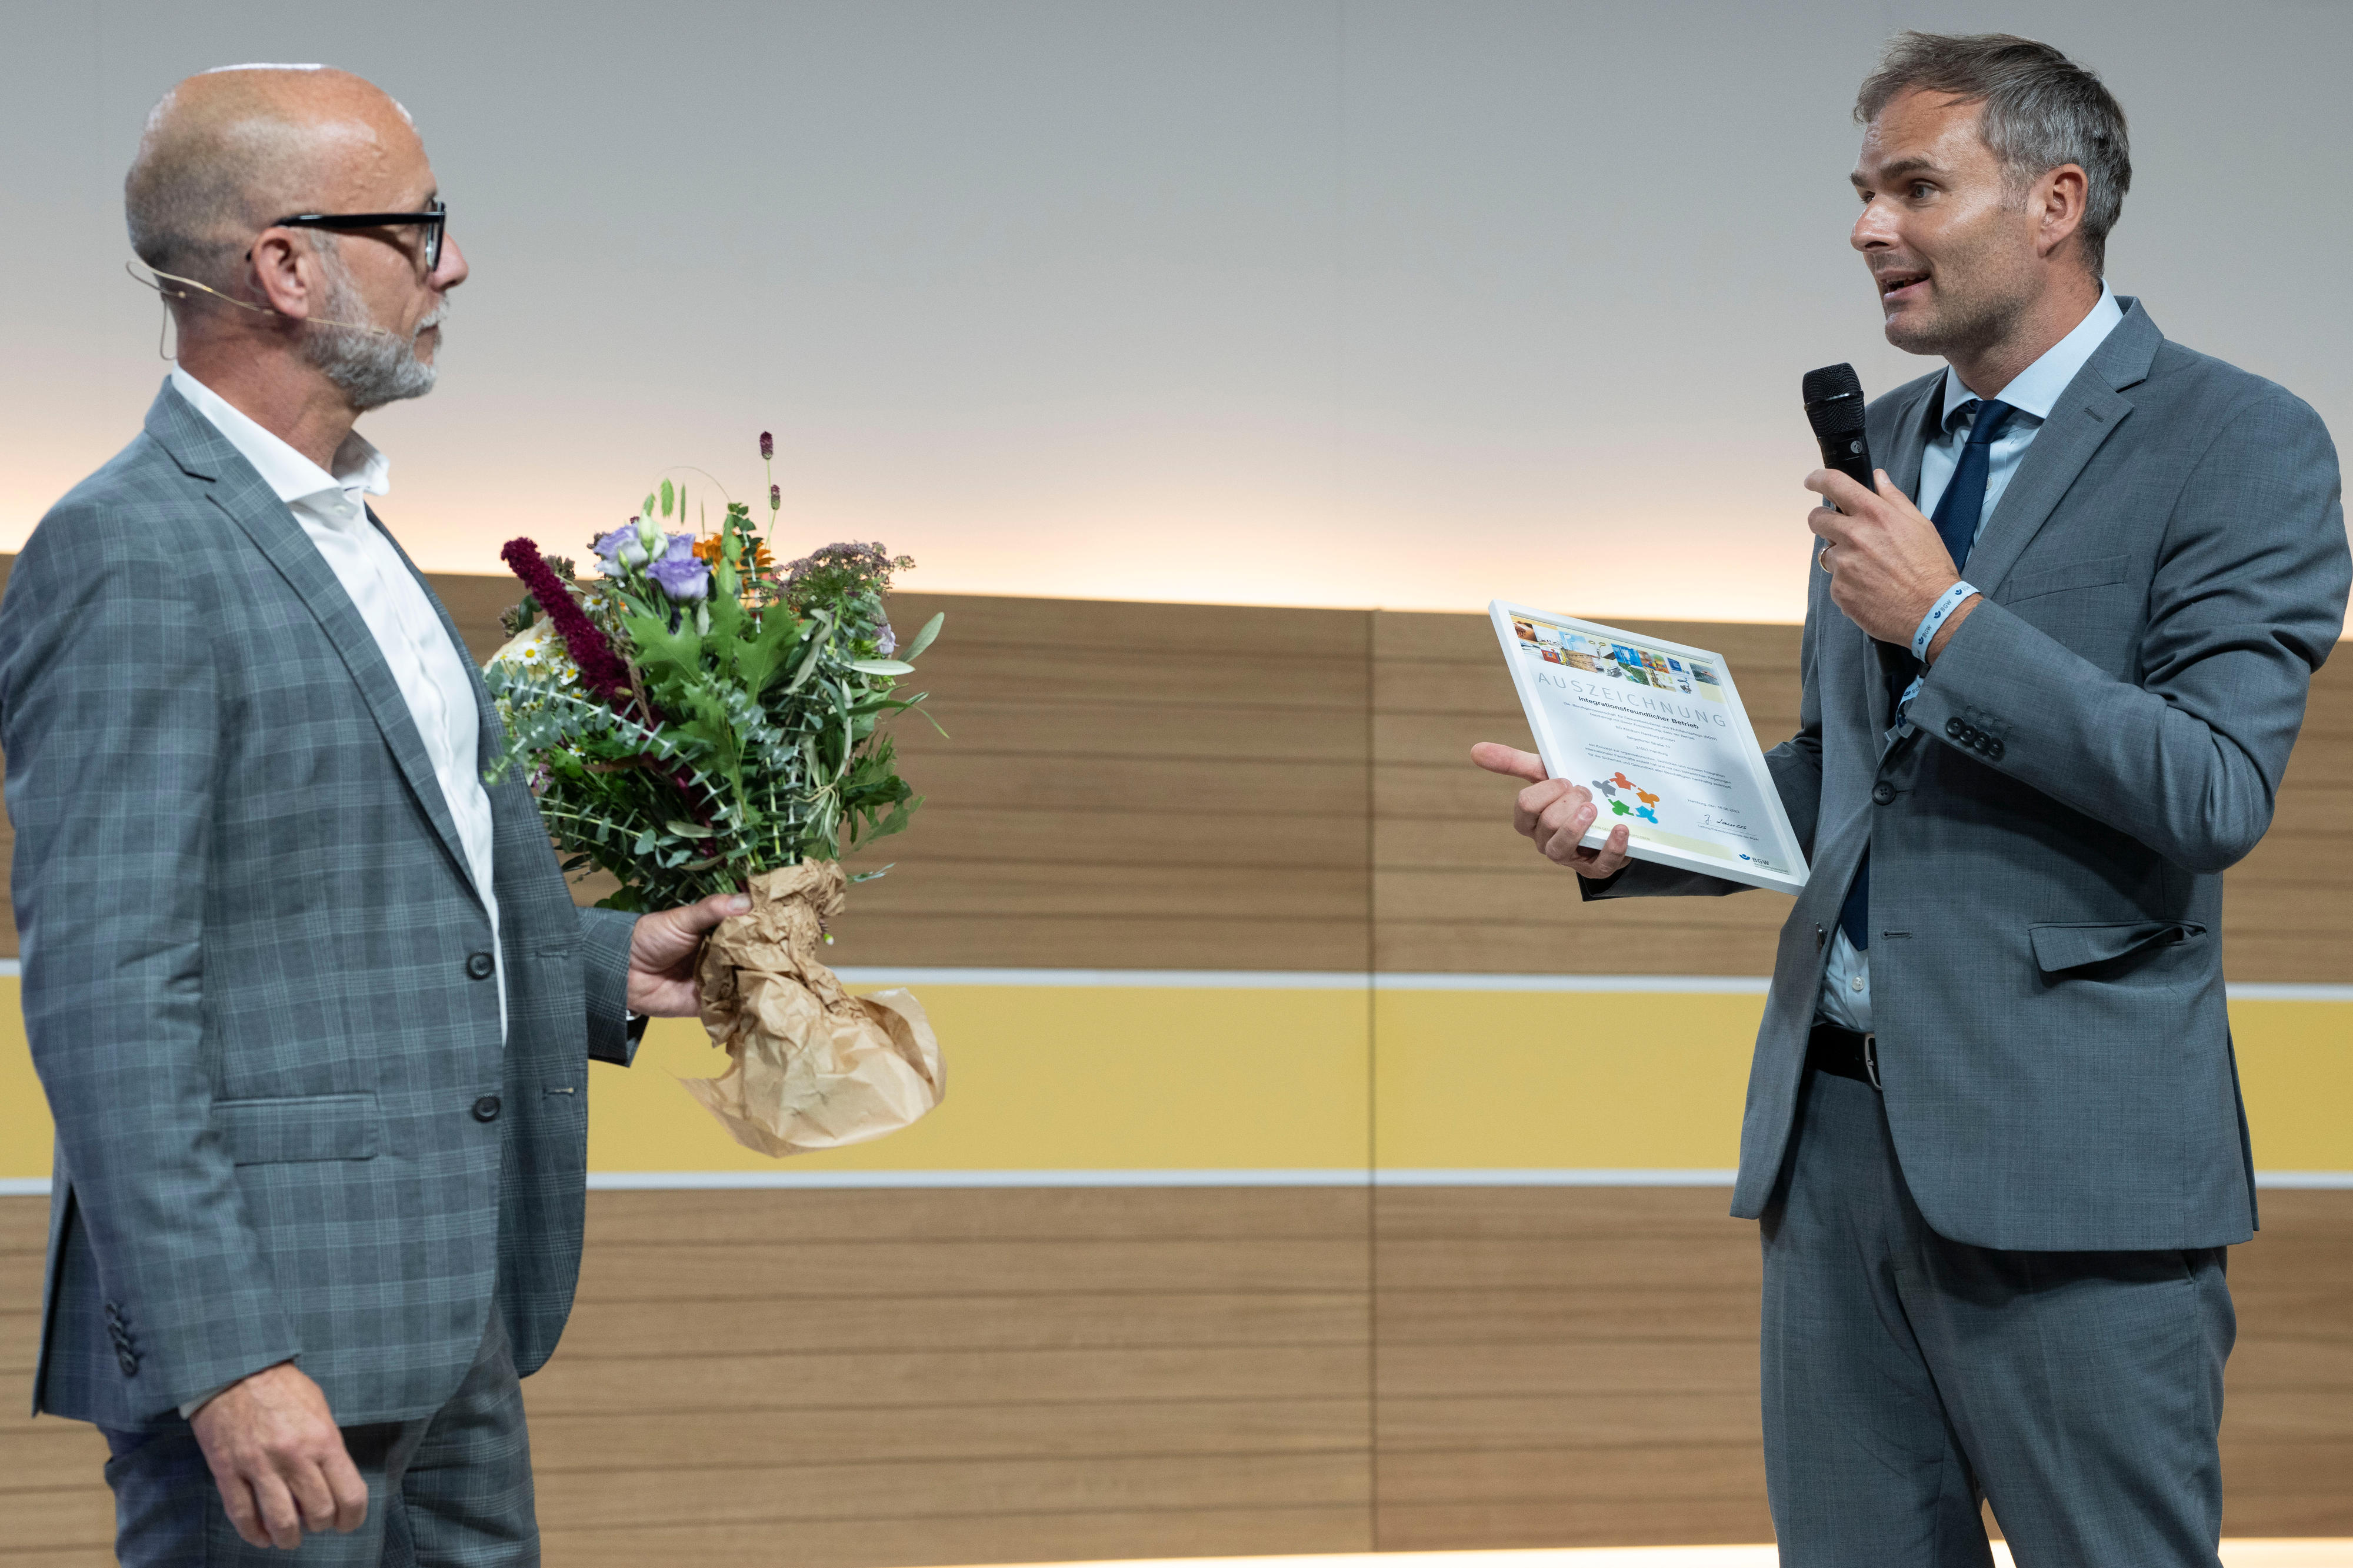 Zwei Männer in Anzug stehen einander zugewwandt auf einer Bühne, der Linke hat einen Blumenstrauß in der Hand, der rechte spricht in ein Mikrofon und hat eine Urkunde in der Hand